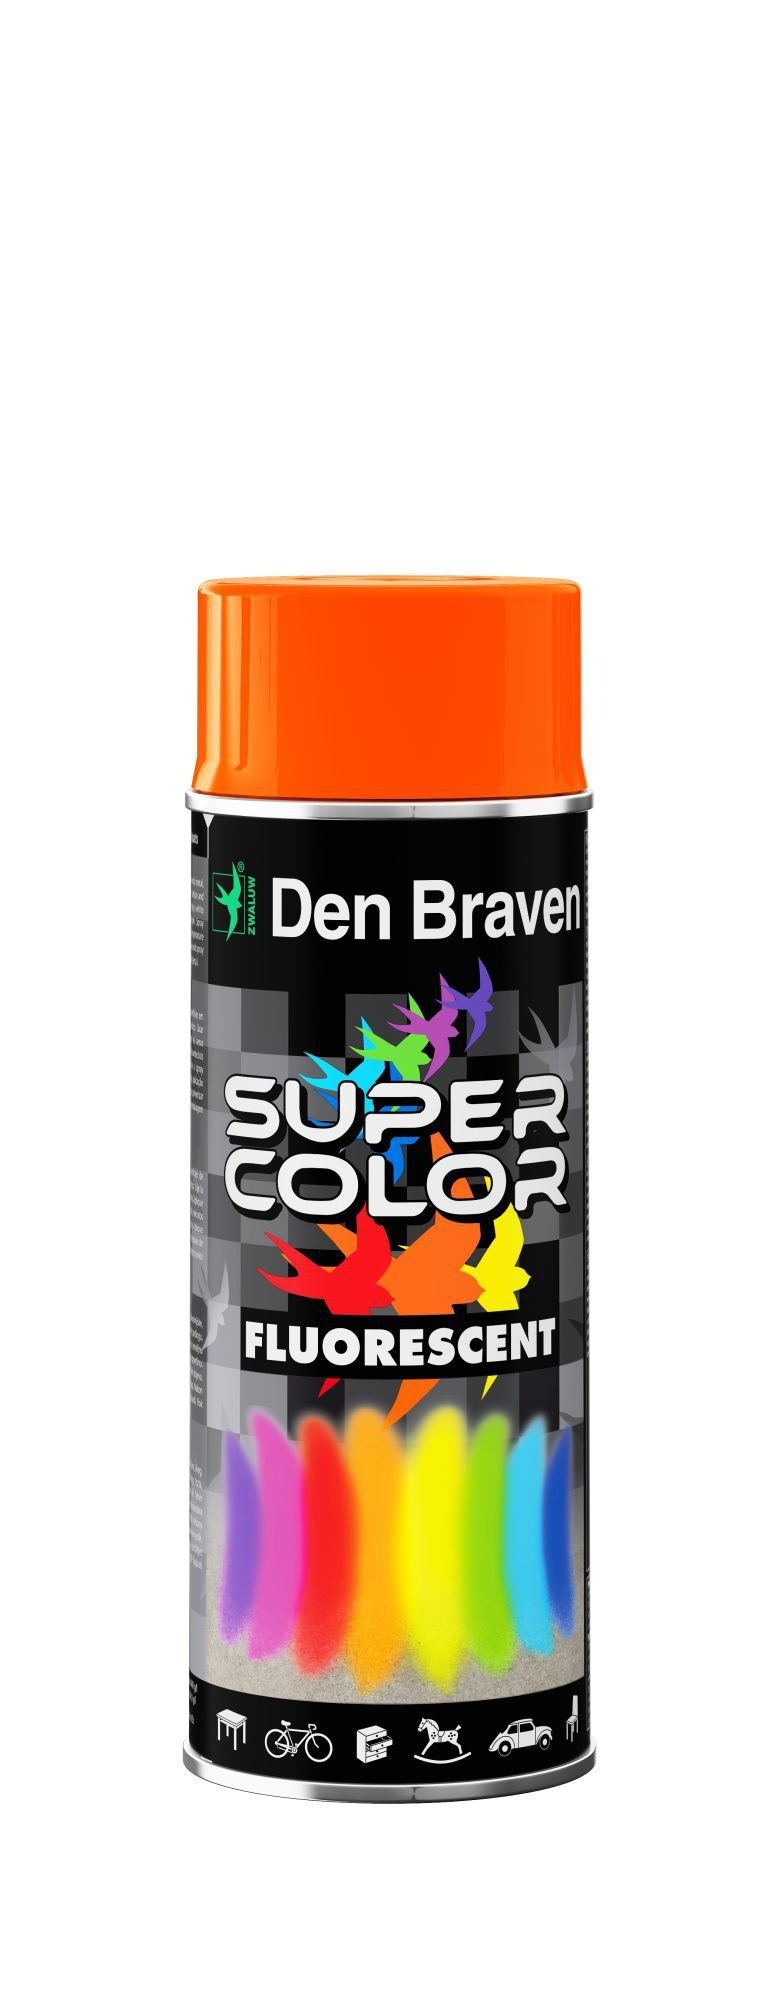 Siedem sposobów na idealny kolor - lakiery w spray’u Super Color firmy Den Braven